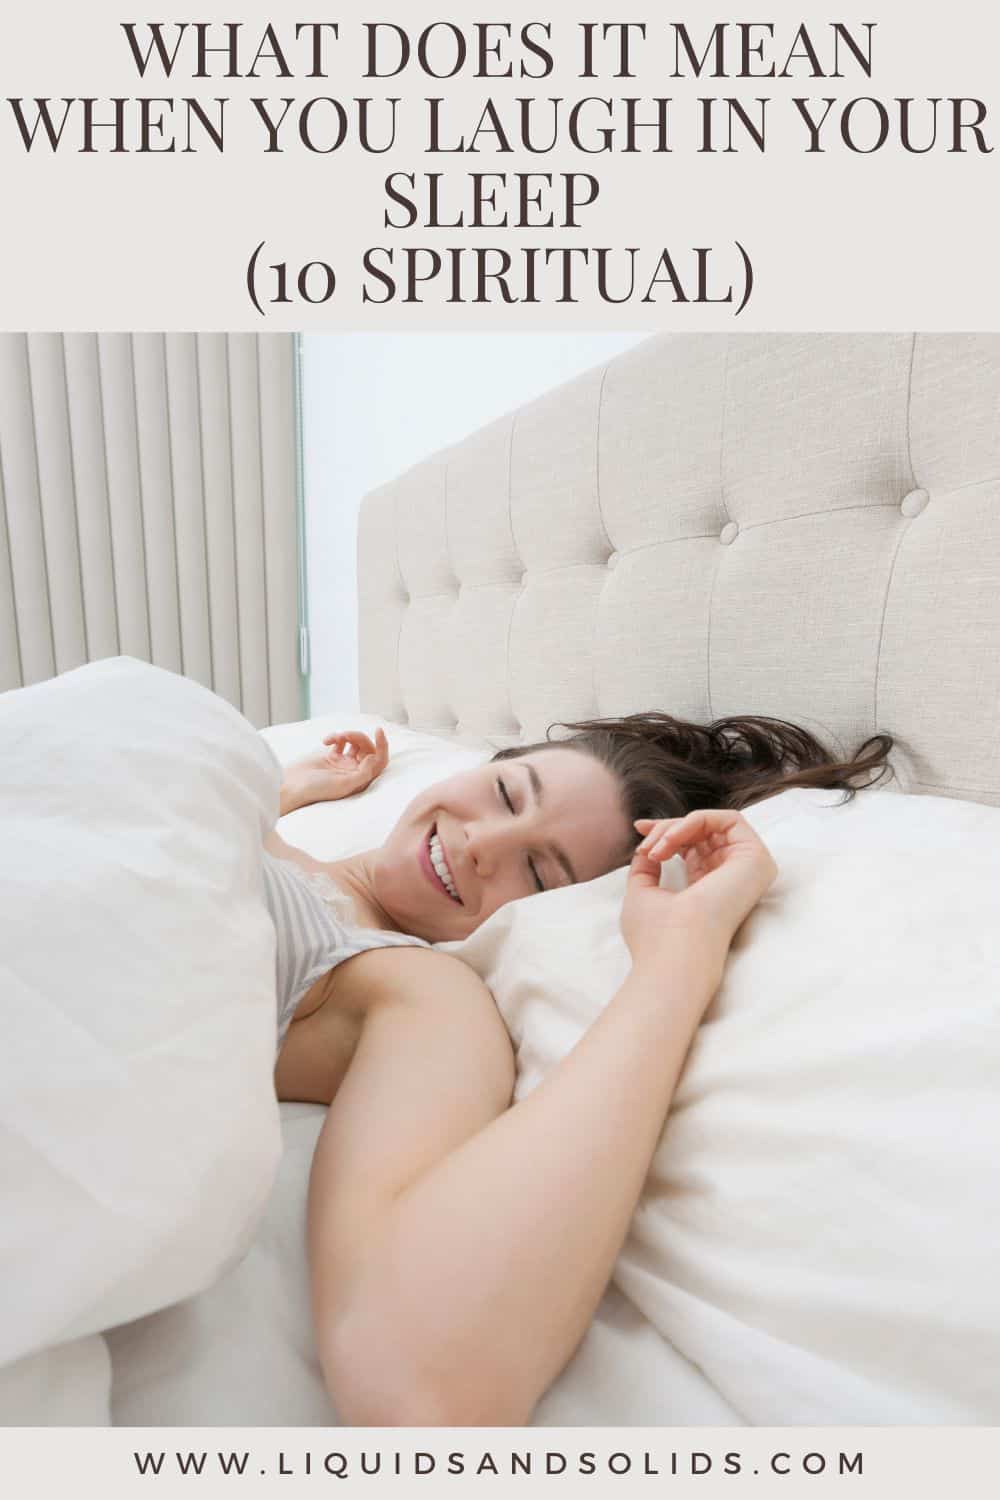  Hvad betyder det, når du griner i søvne? (10 spirituelle betydninger)